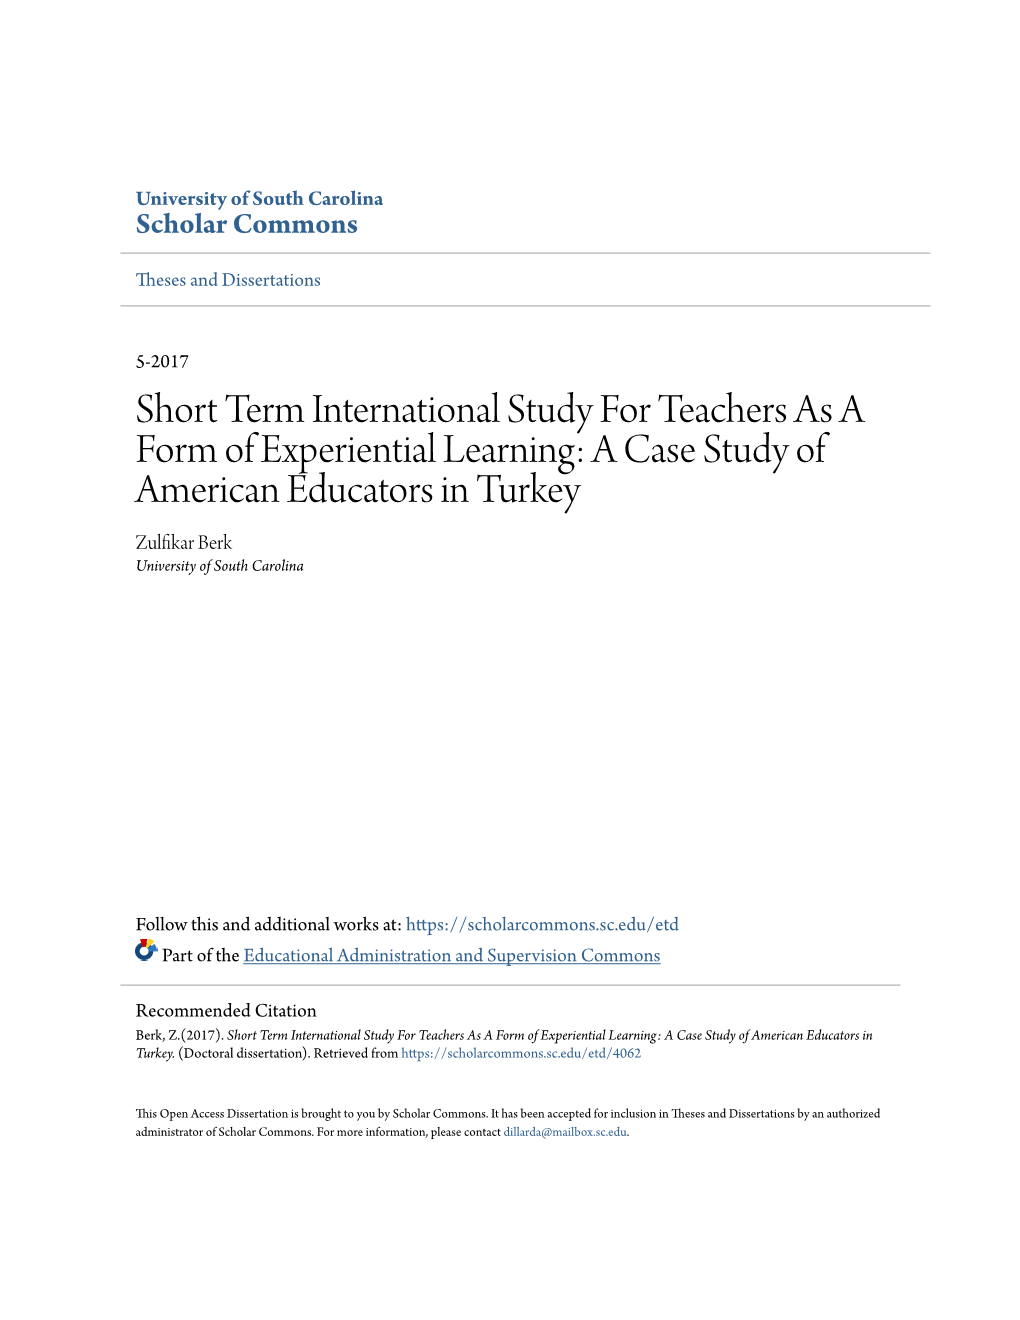 Short Term International Study for Teachers As A